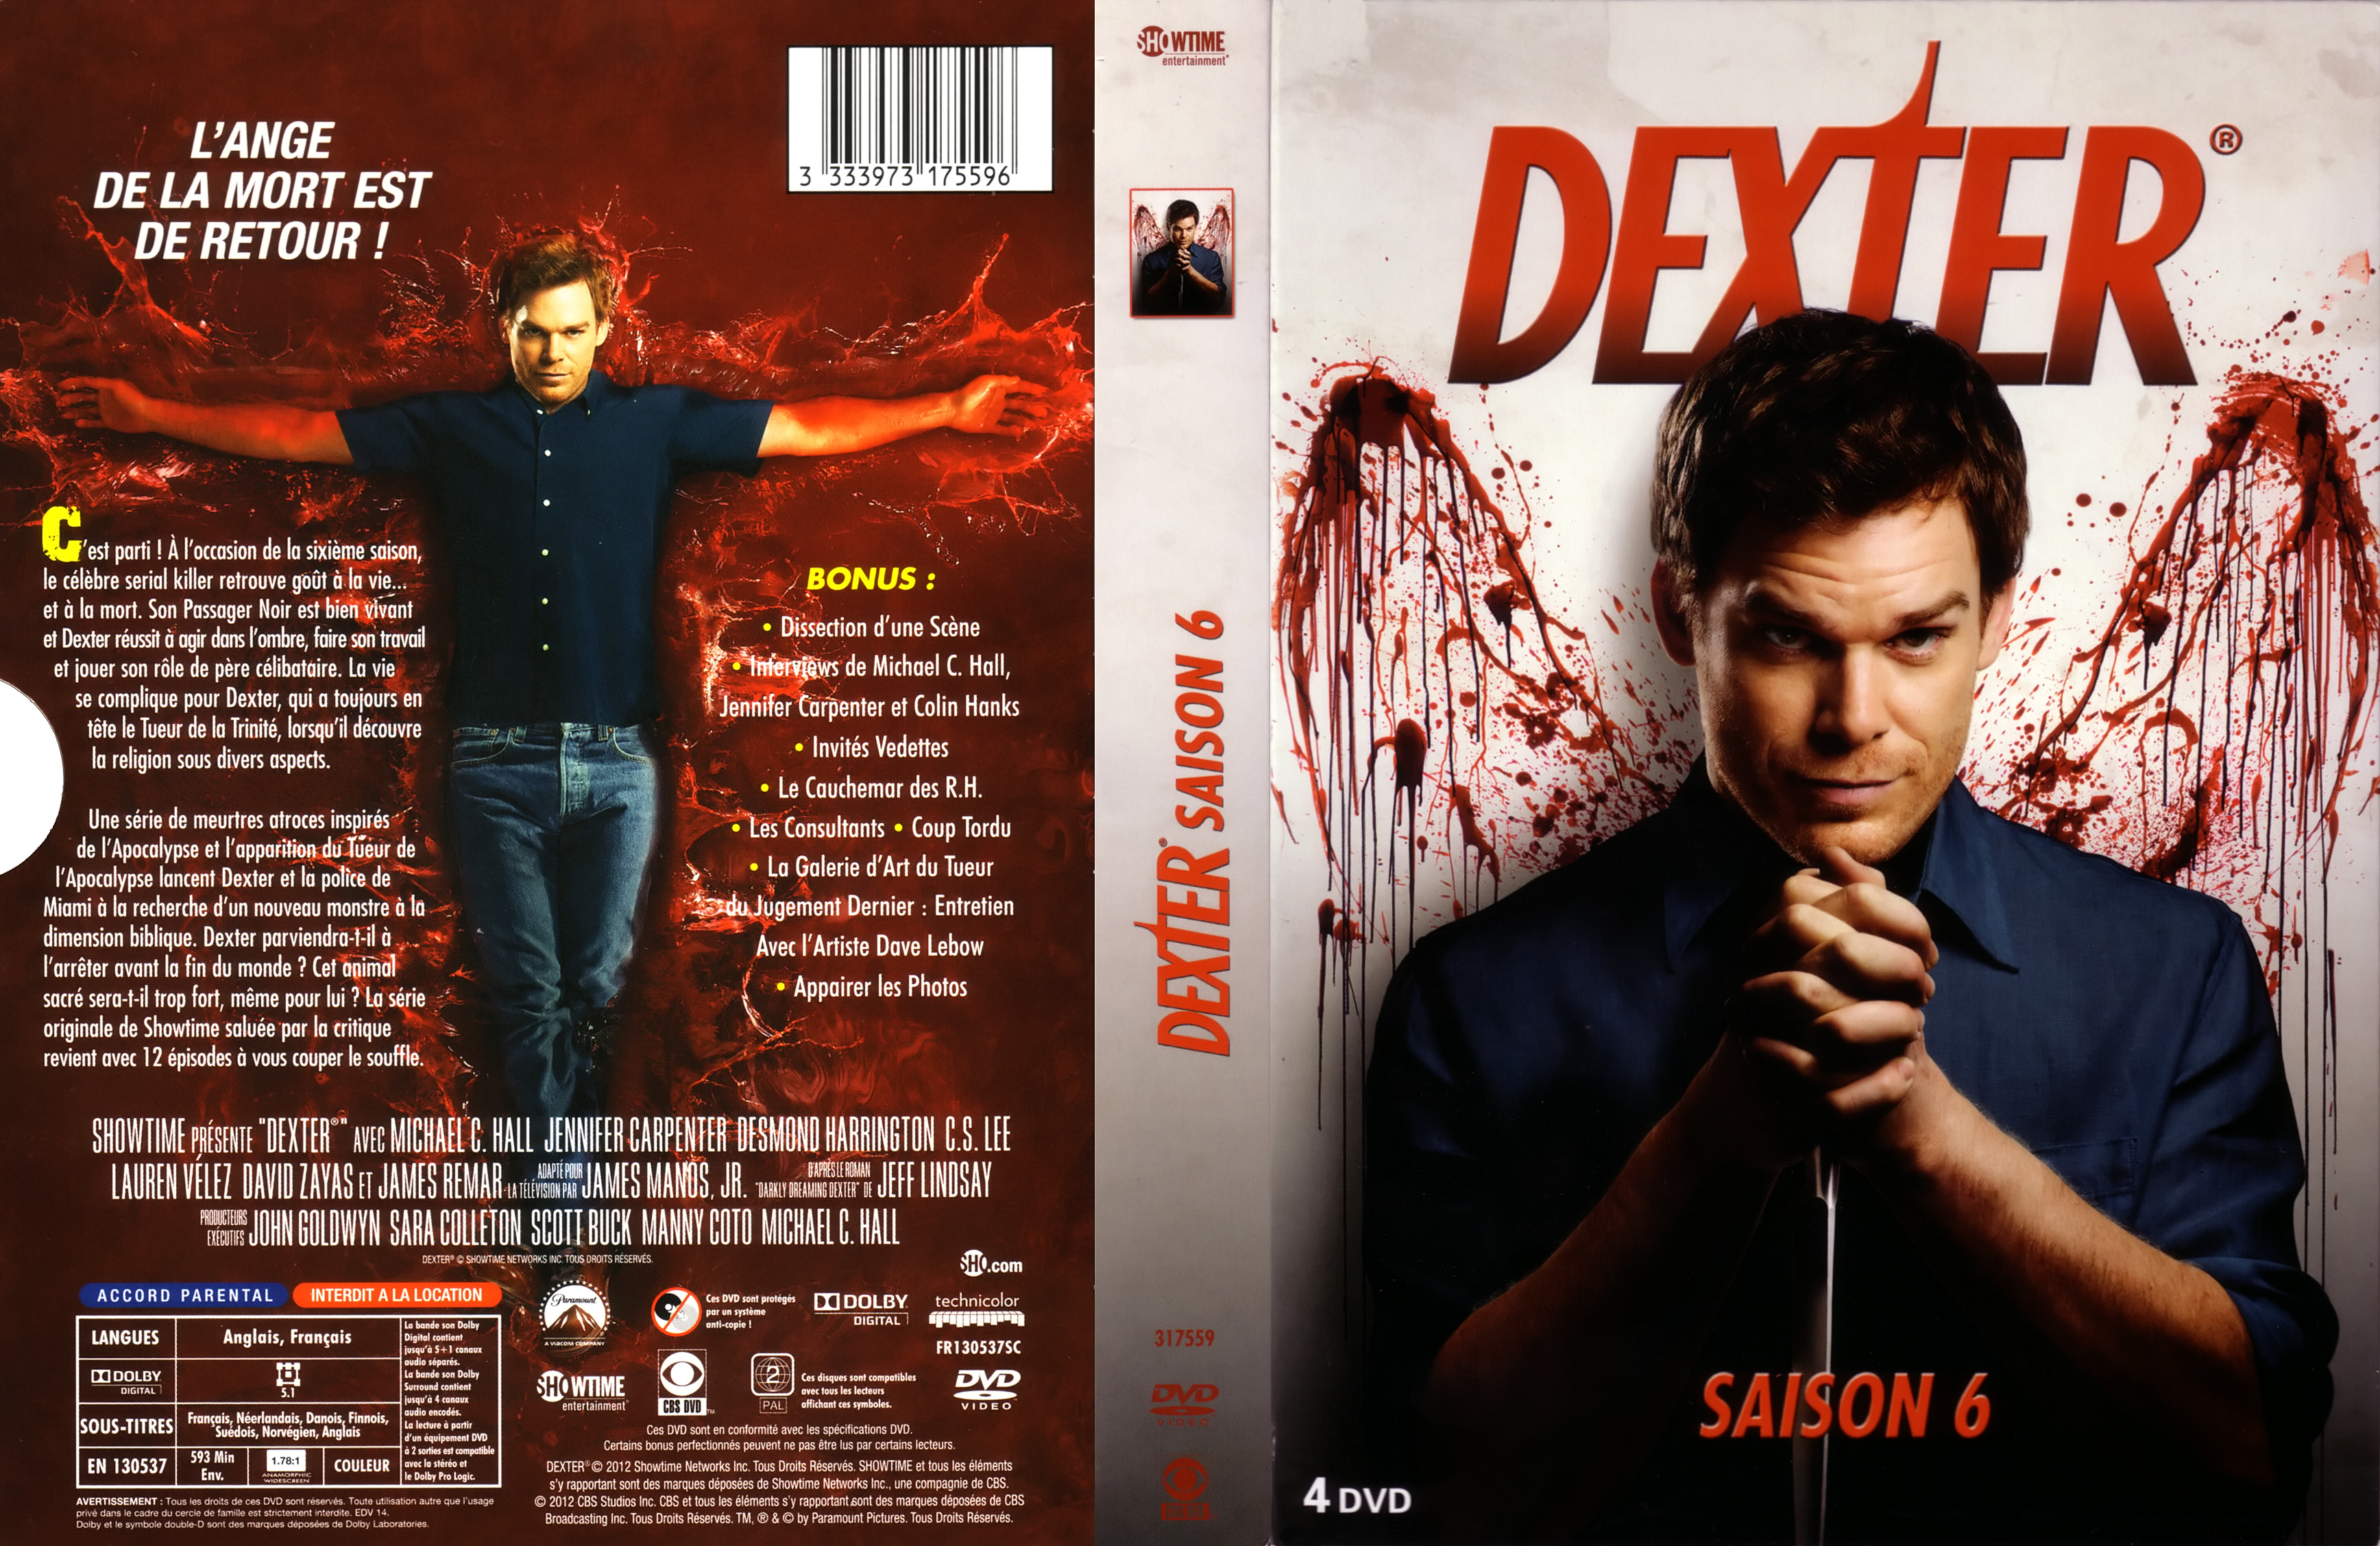 Jaquette DVD Dexter saison 6 COFFRET